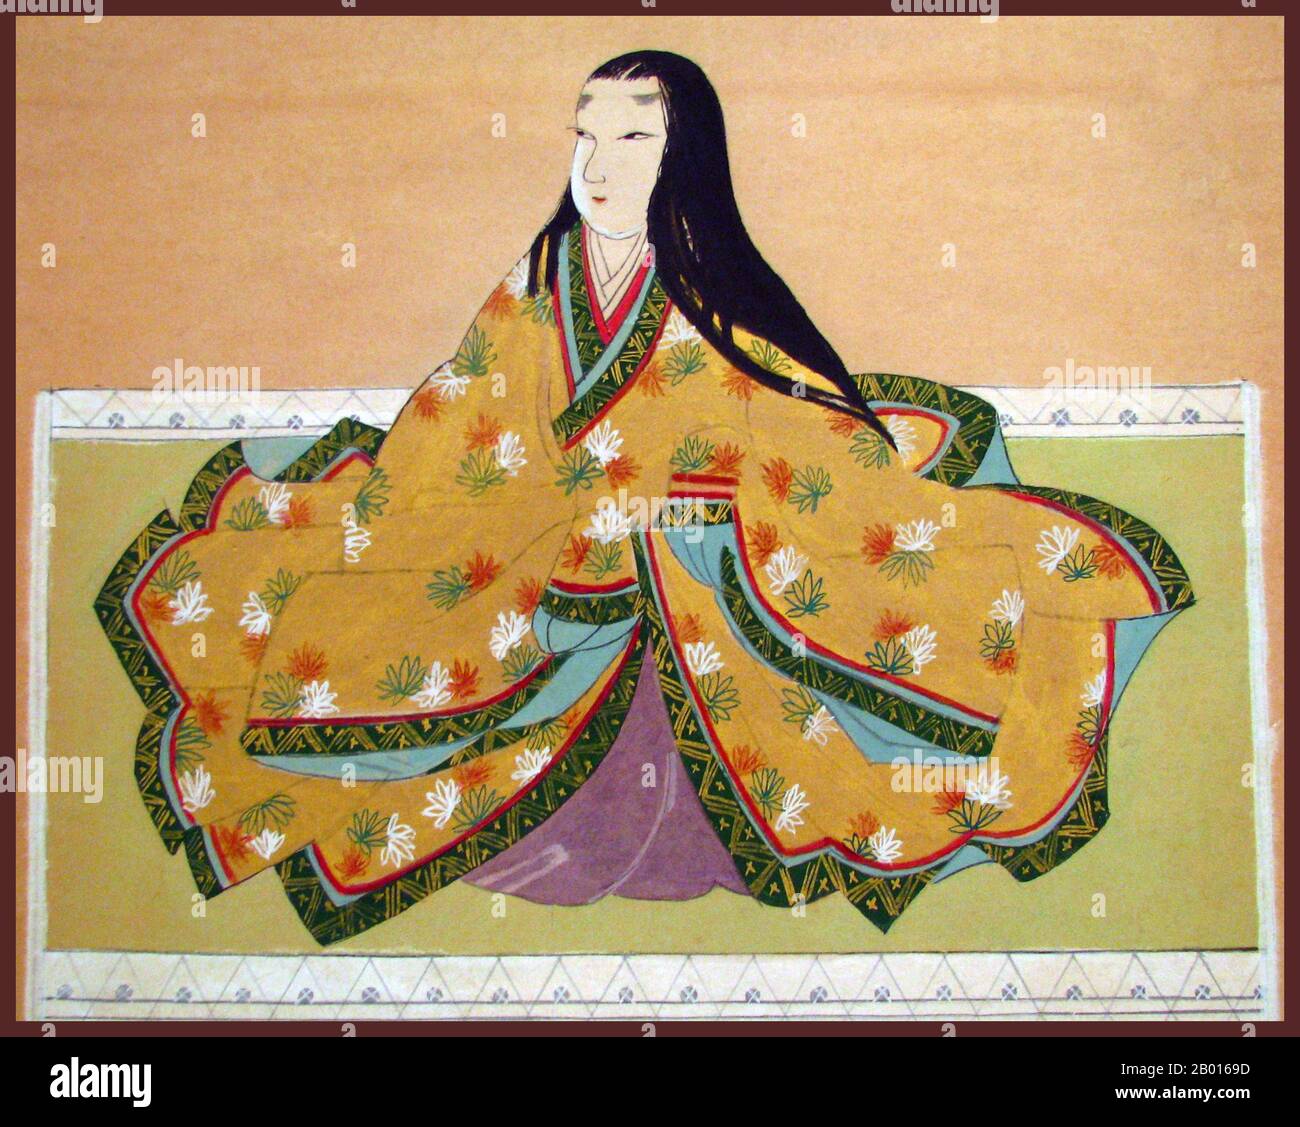 Japon : Lady Saigo-no-Tsubone (1552 - 1er juillet 1589).Peinture de défilement suspendue, c.1586-1589.Saigō-no-Tsubone ou 'Lady Saigo', également connu sous le nom d'OAI, était un consort et conseiller de confiance de Tokugawa Ieyasu, le premier shogun du shogunat Tokugawa.Elle était également mère de Tokugawa Hidetada, le deuxième shogun.Elle a été considérée par beaucoup comme le « pouvoir derrière le trône », influençant fortement les philosophies et les politiques d'Ieyasu, ainsi que son choix d'alliés et même ses tactiques de combat.Elle a utilisé son poste à des fins caritatives et était un bouddhiste dévot.Elle souffrait également de myopie. Banque D'Images